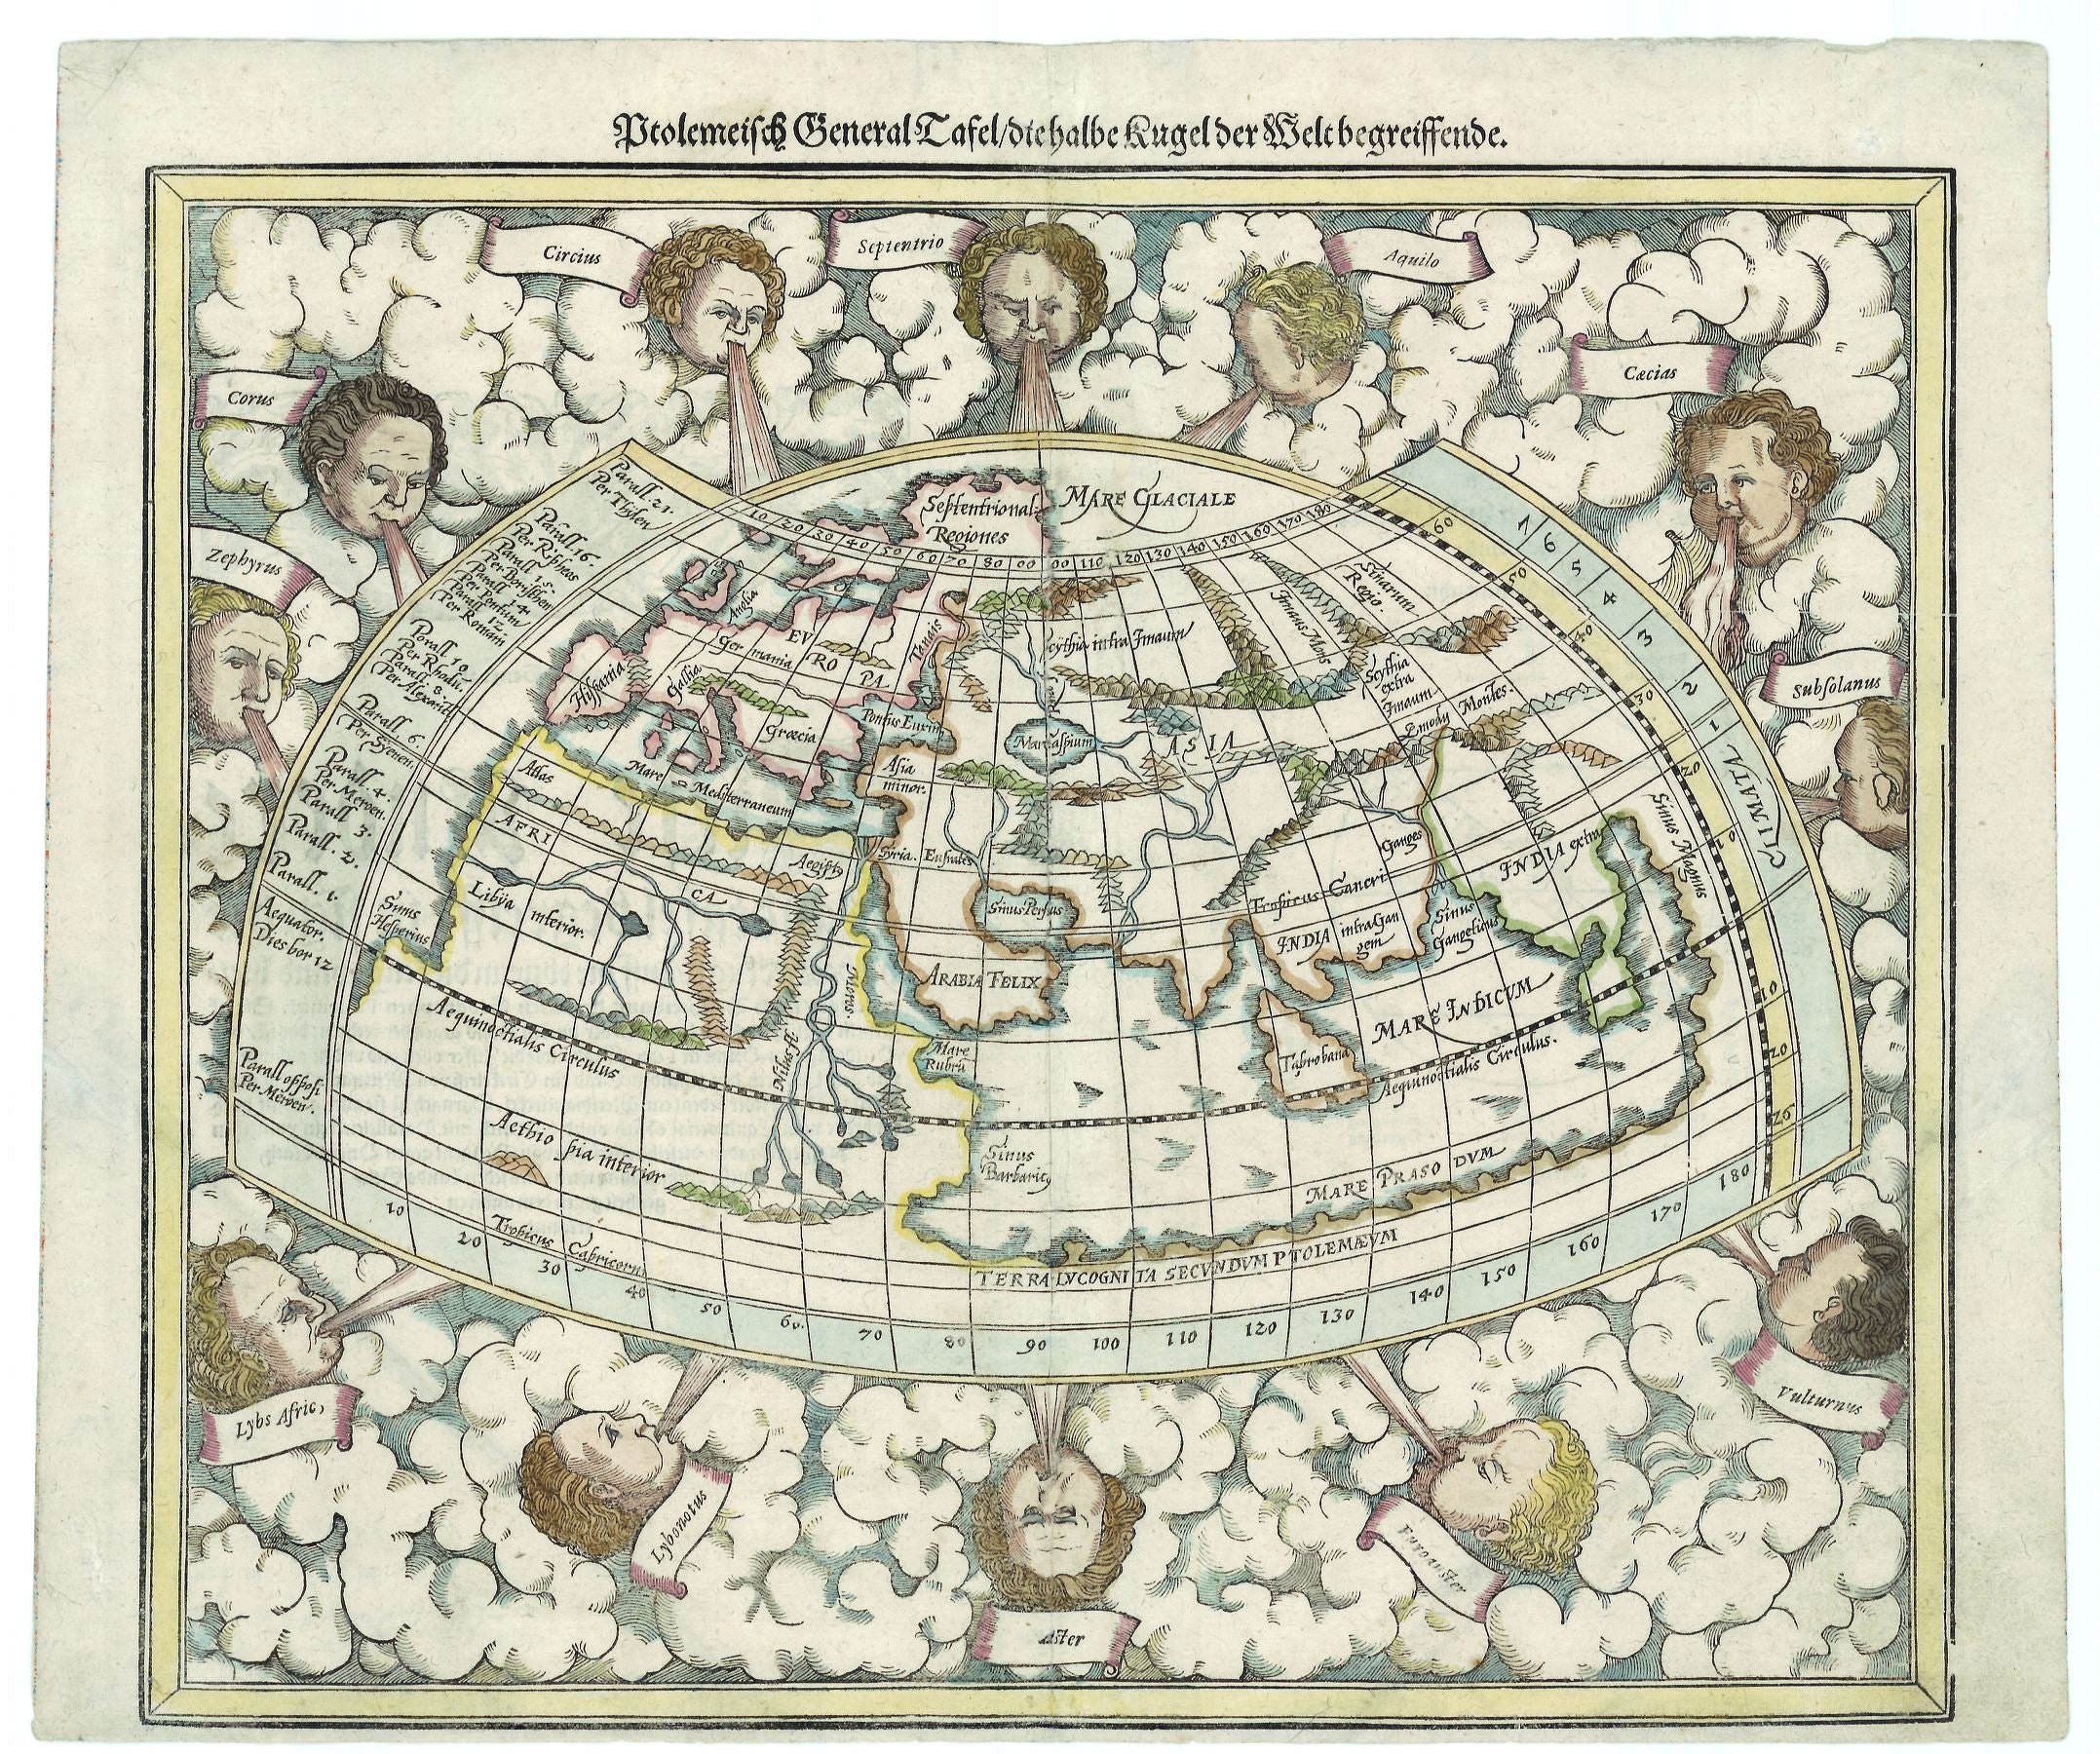 Münster, Sebastian: Ptolemeisch General Tafel/Die halbe Kugel der Welt begreiffende. 1588